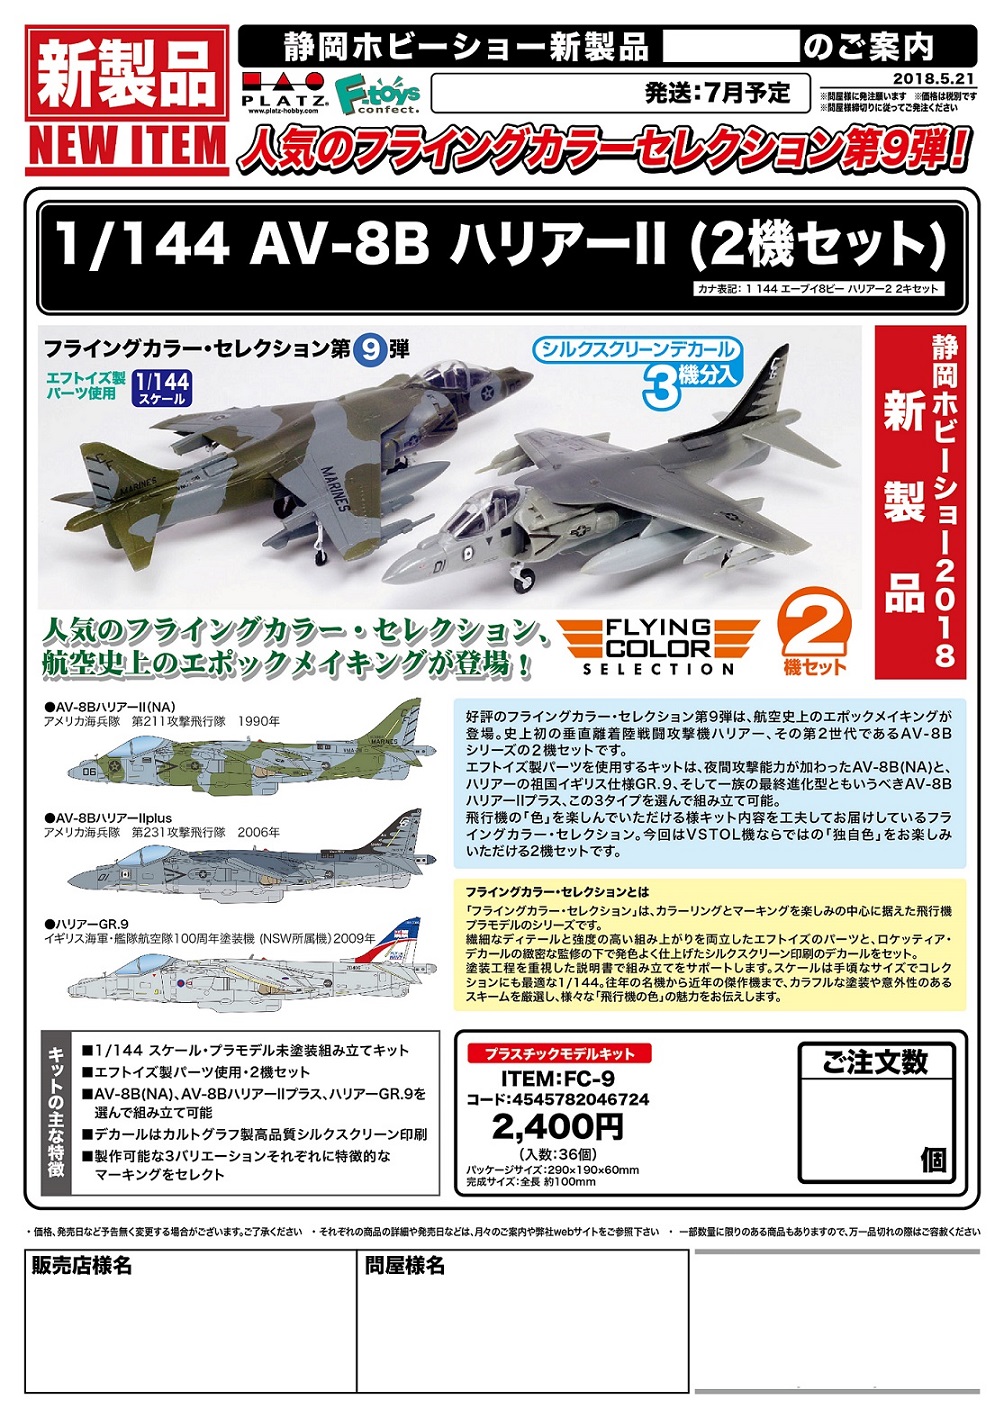 【B】1/144拼装模型 鹞式战机 AV-8B HARRIER II 双机套装 046724